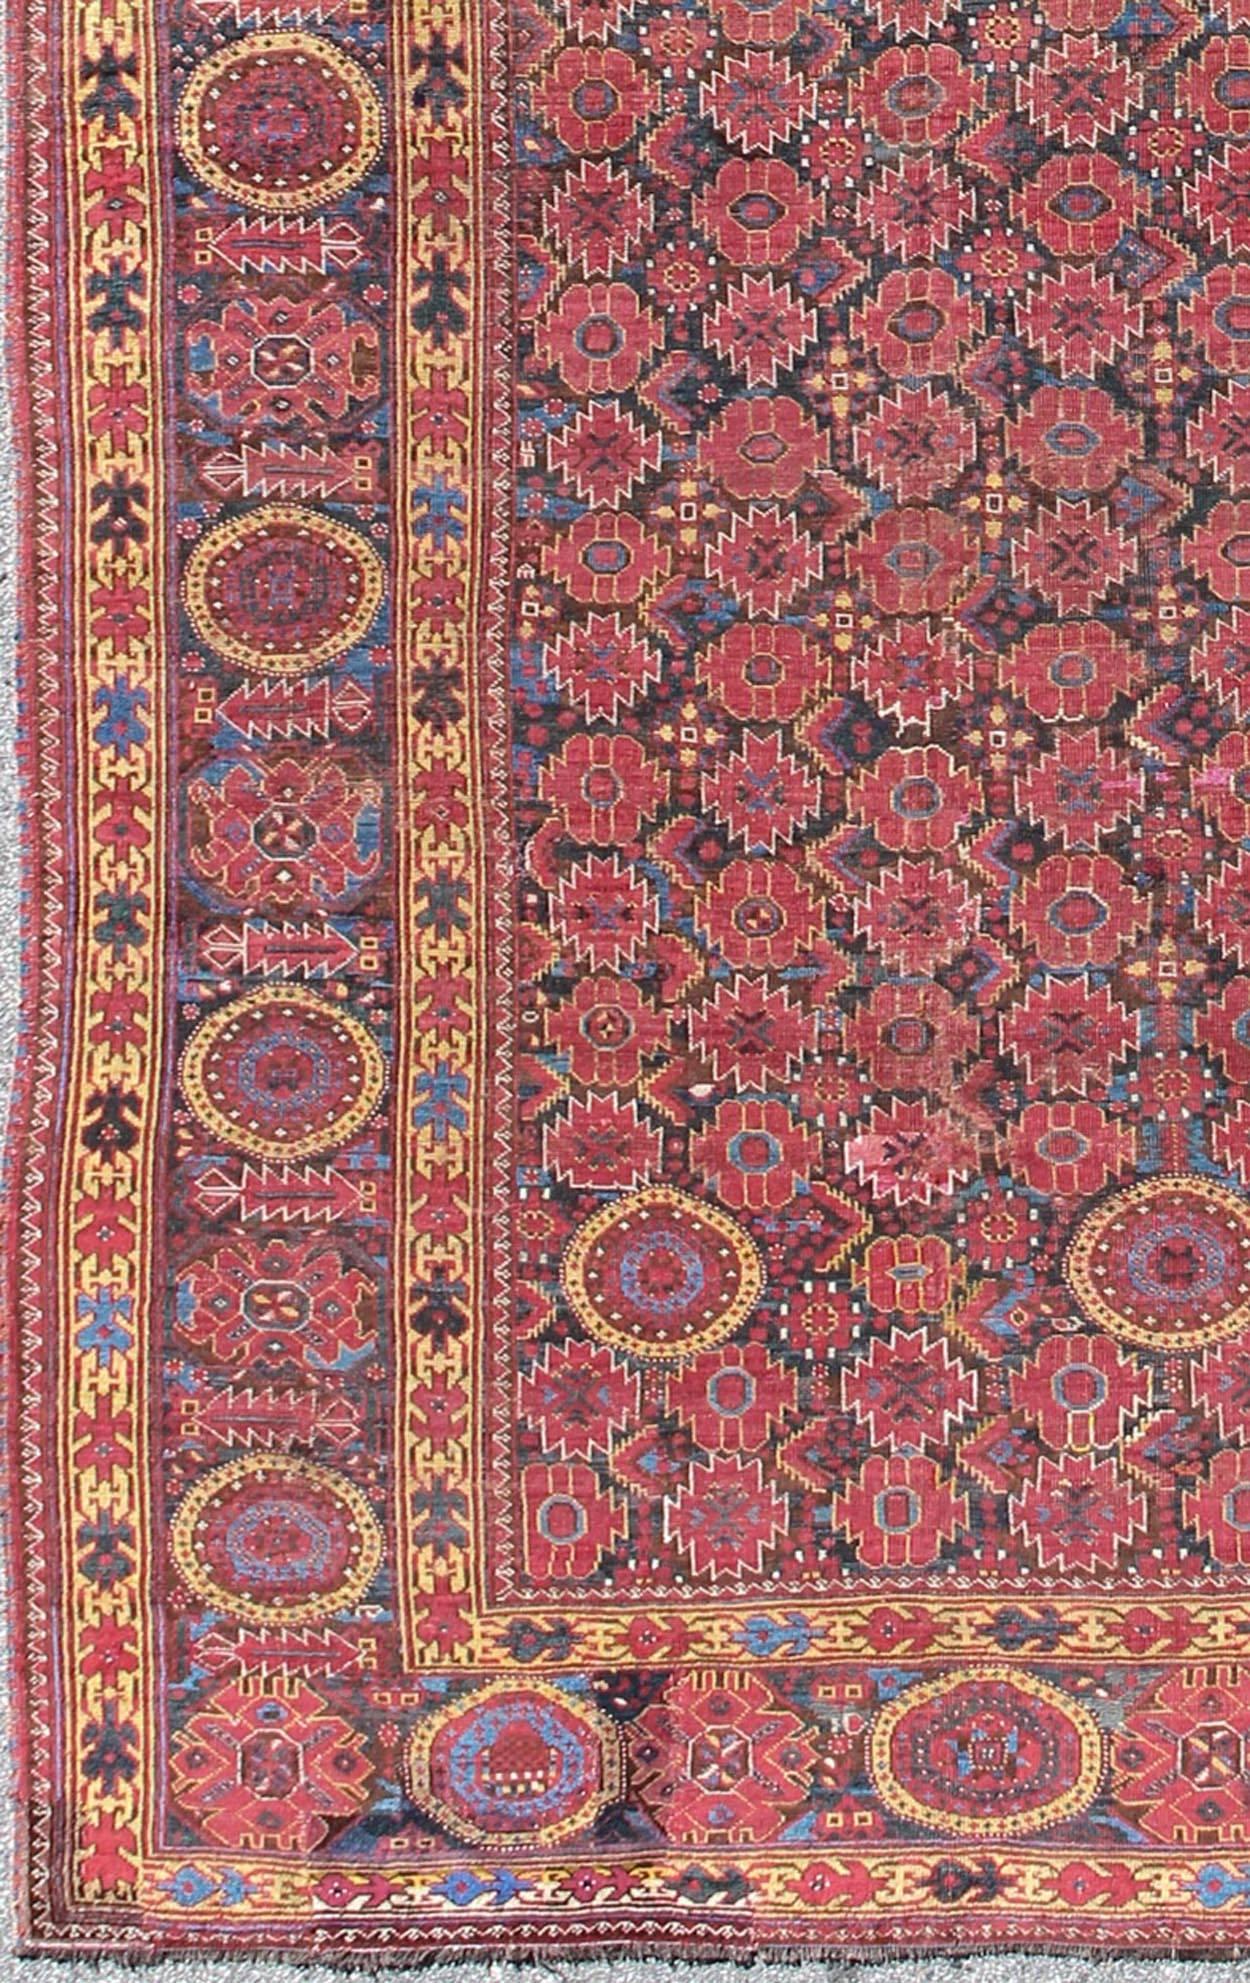 Antiker Beshir Langer Galerieteppich, teppich/D-0508
Dieser beeindruckende antike Beshir-Teppich zeigt ein geometrisches Muster mit kreisförmigen Medaillons, die ineinander verschlungen sind. Auf braunem/kohlebraunem Hintergrund, in verschiedenen